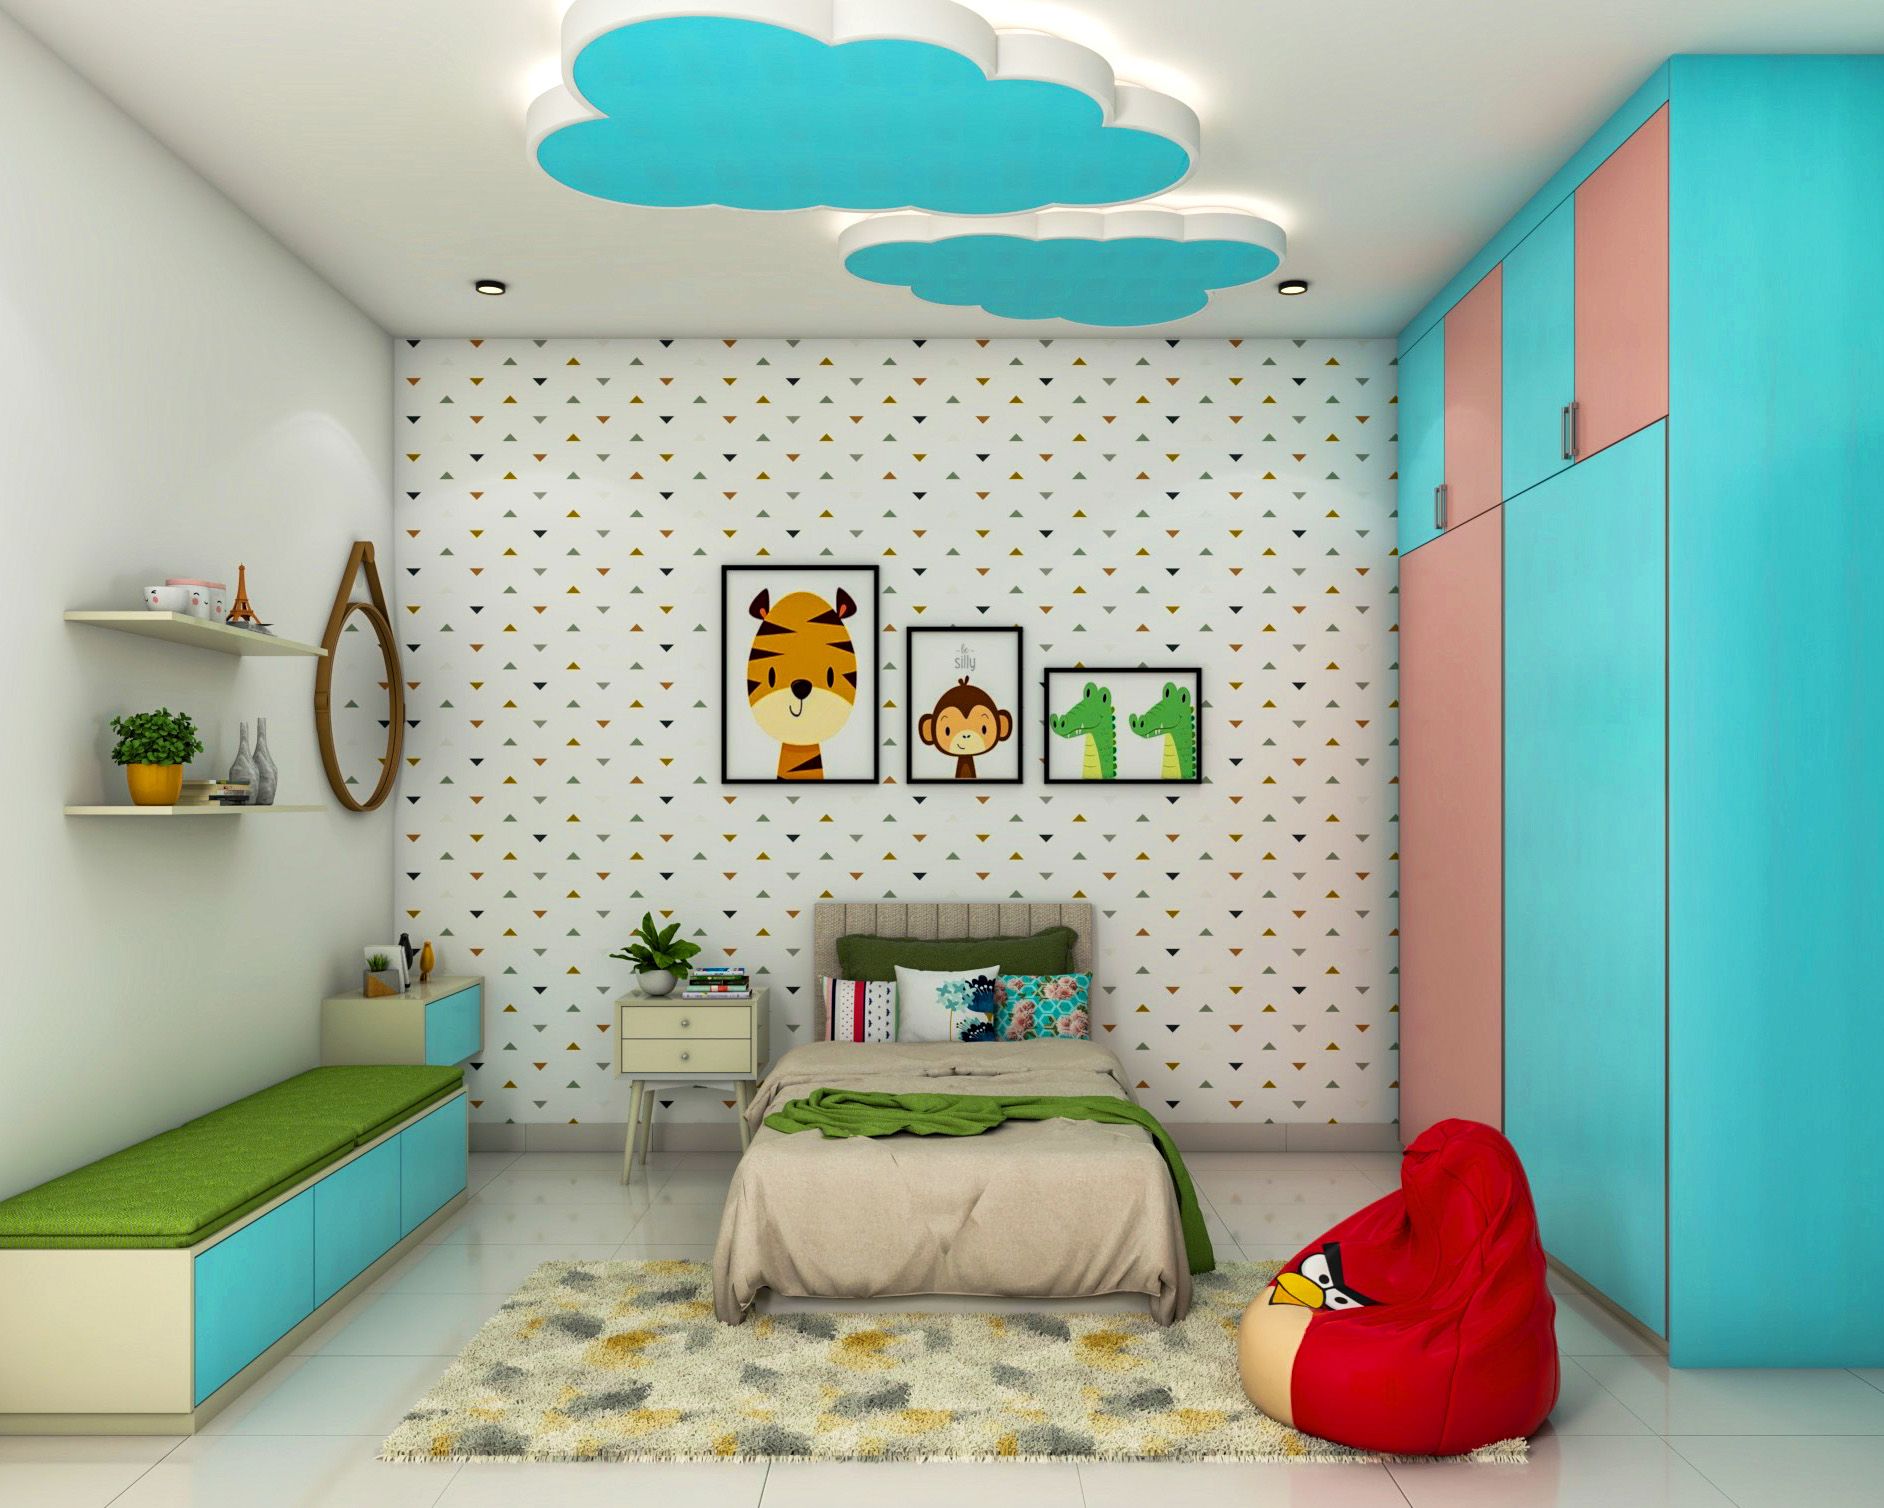 Modern White Kids Bedroom Wallpaper Design With Triangular Motifs